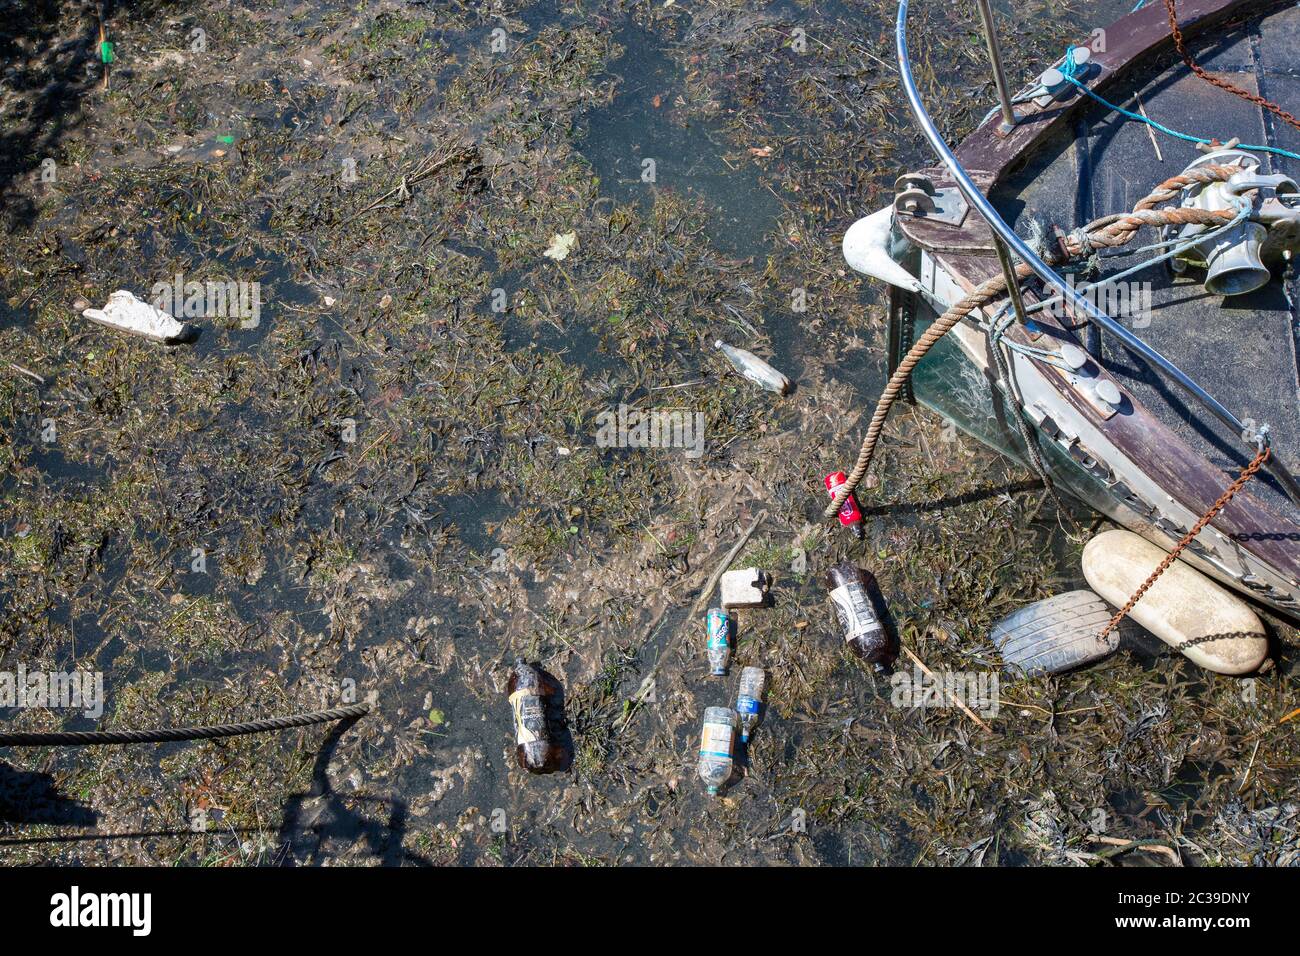 Plastic rubbish around a boat in Workington, Cumbria, UK. Stock Photo